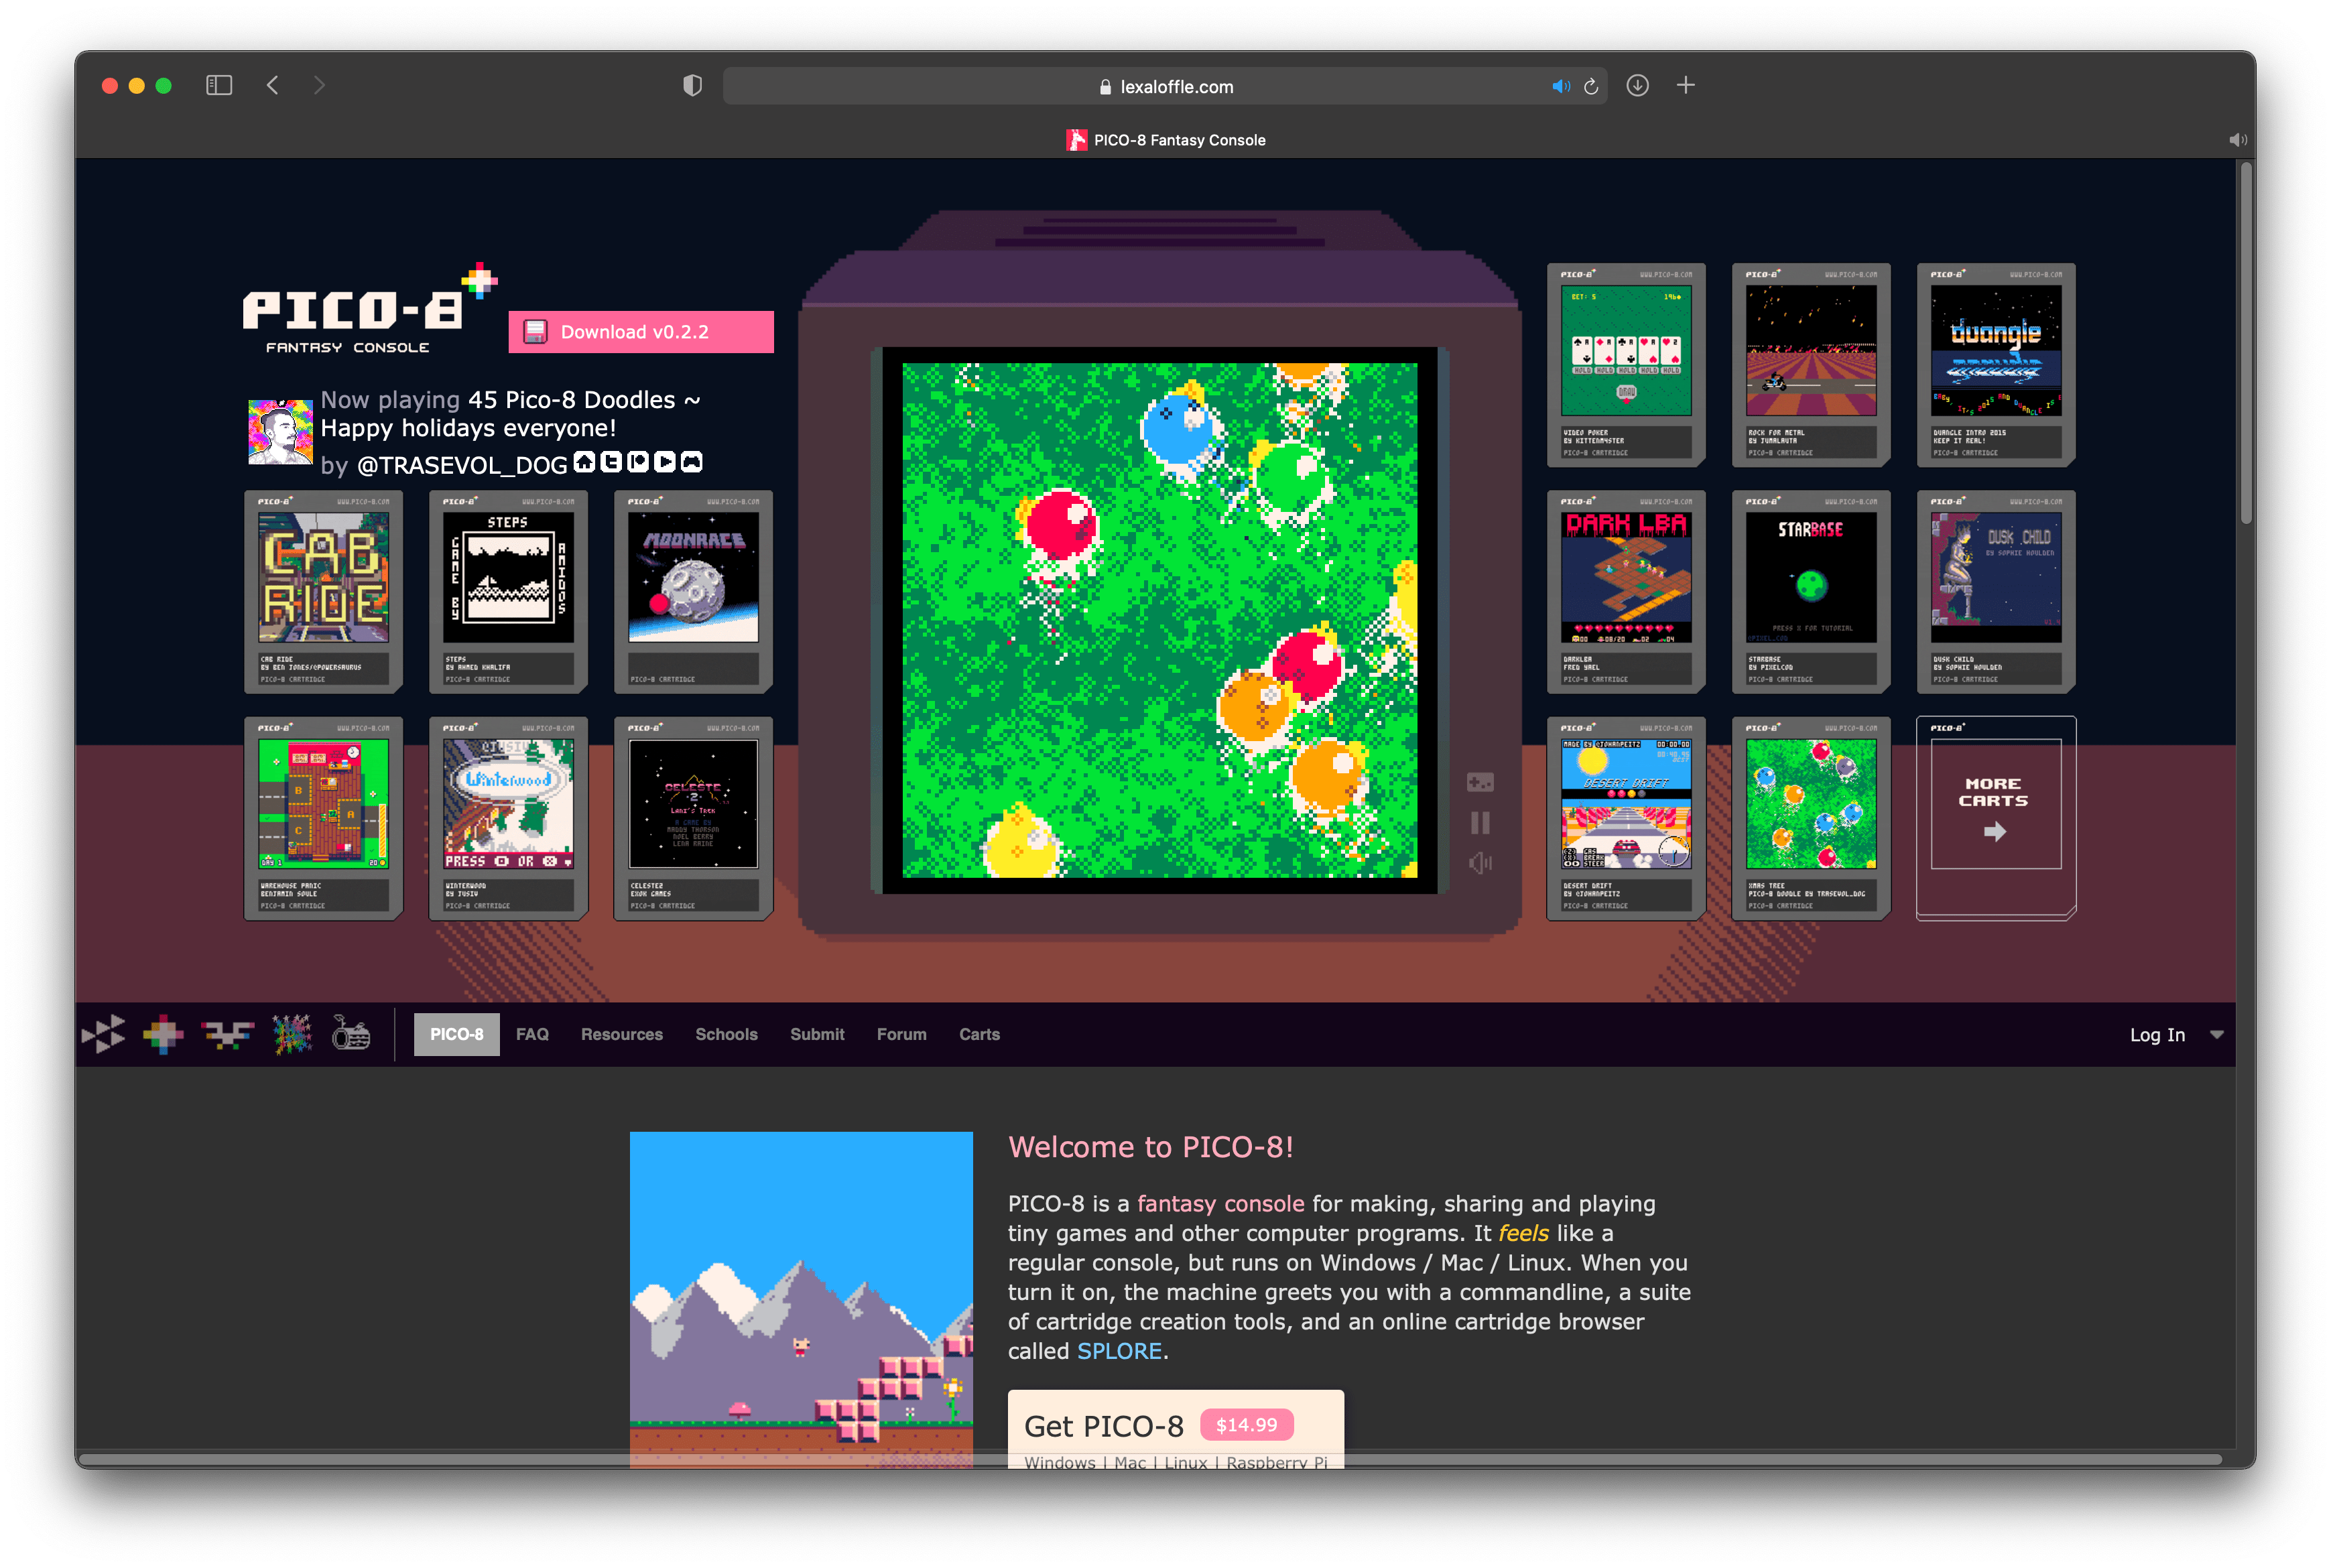 PICO-8 Fantasy Console website screenshot